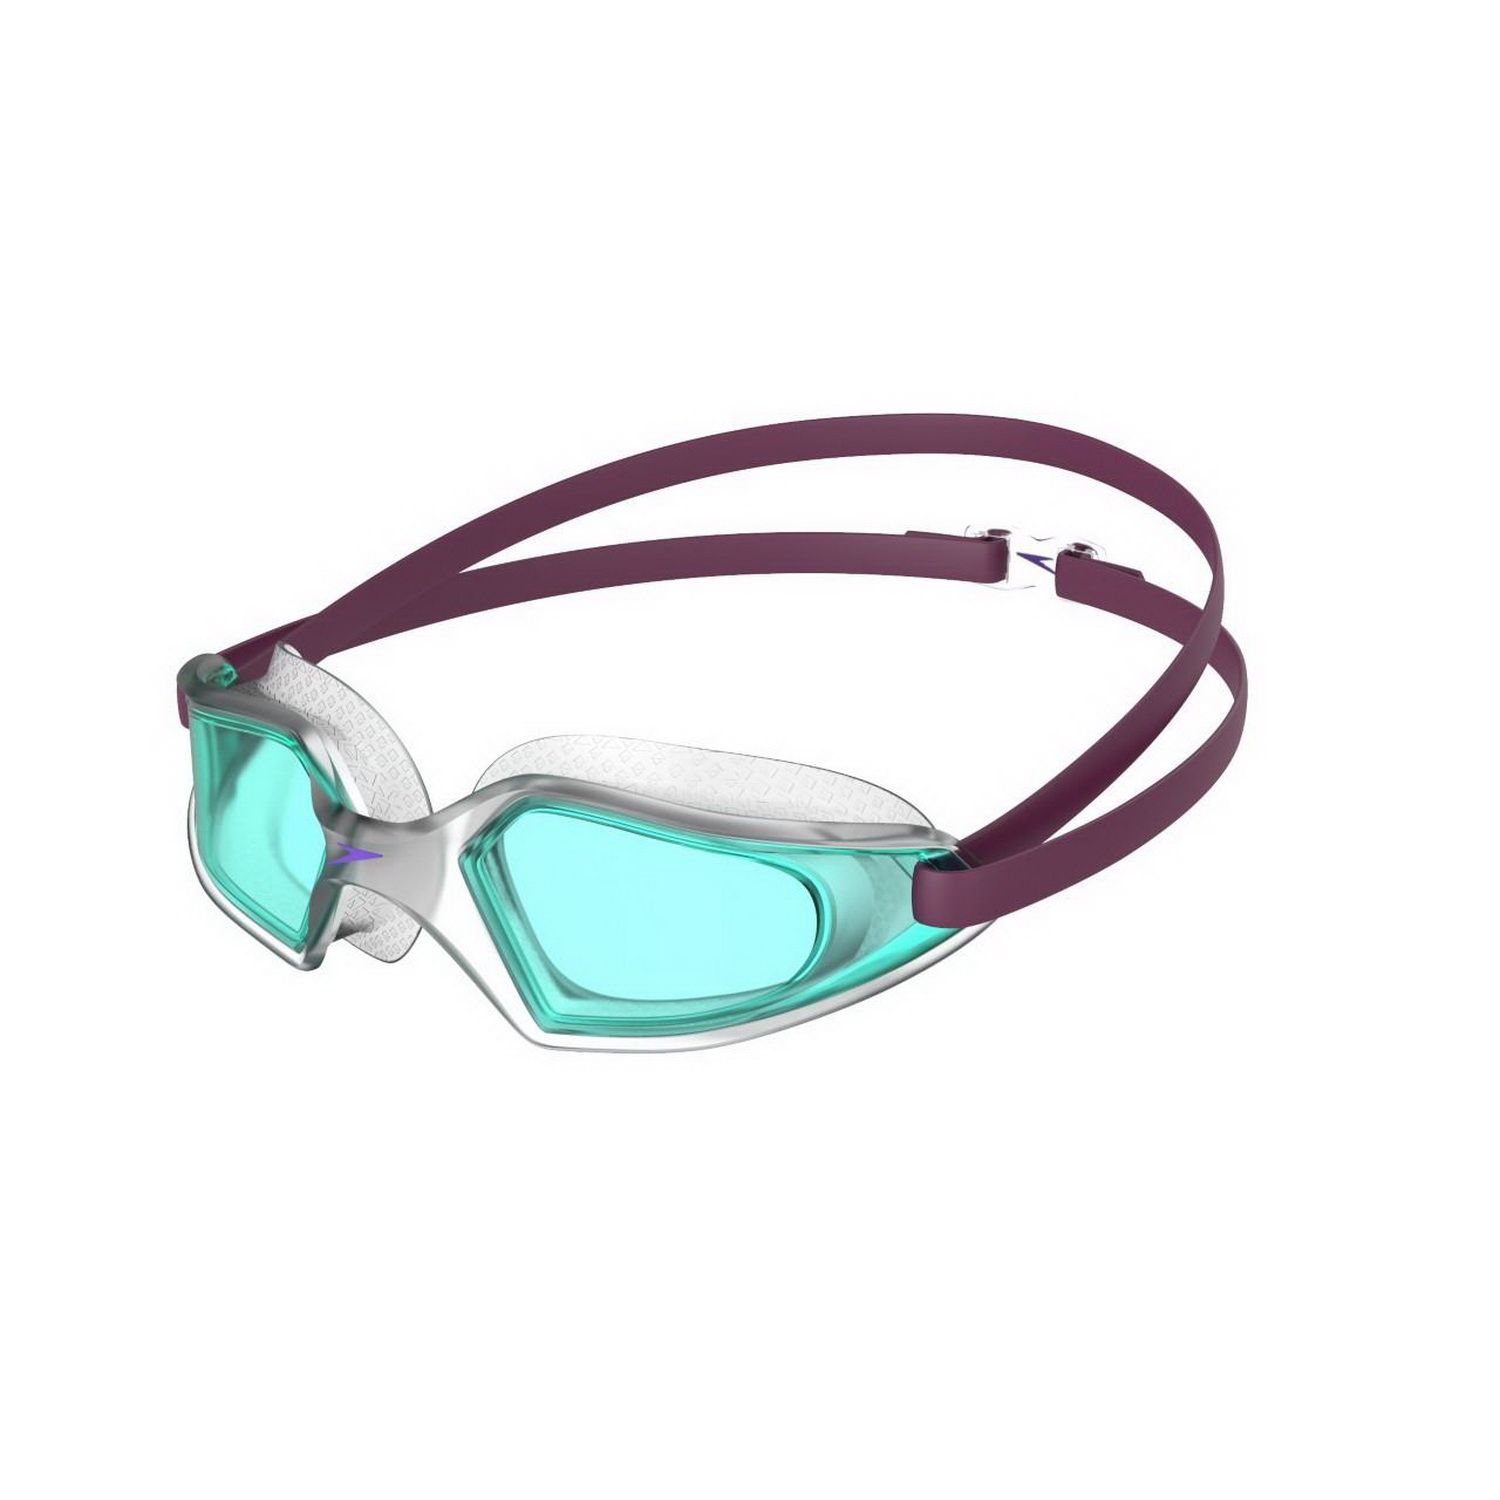 Plavecké okuliare Hydropulse Junior fialová / modrá